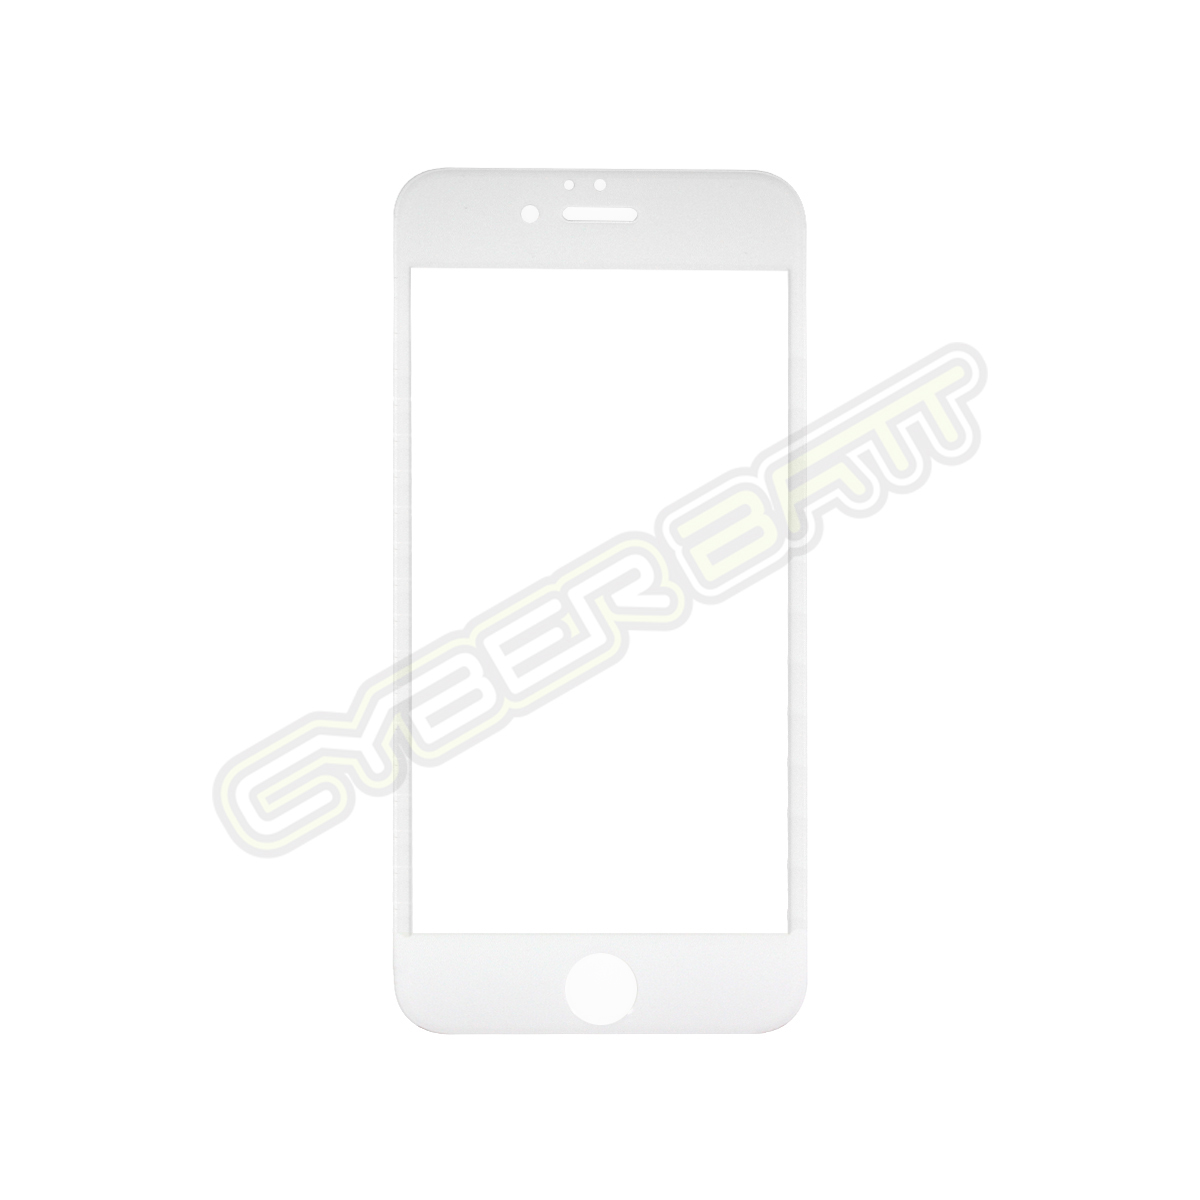 ฟิล์มกระจกกันรอย iPhone 6 Plus / 6s Plus  ขอบนิ่ม สีขาว (CYBERBATT) 